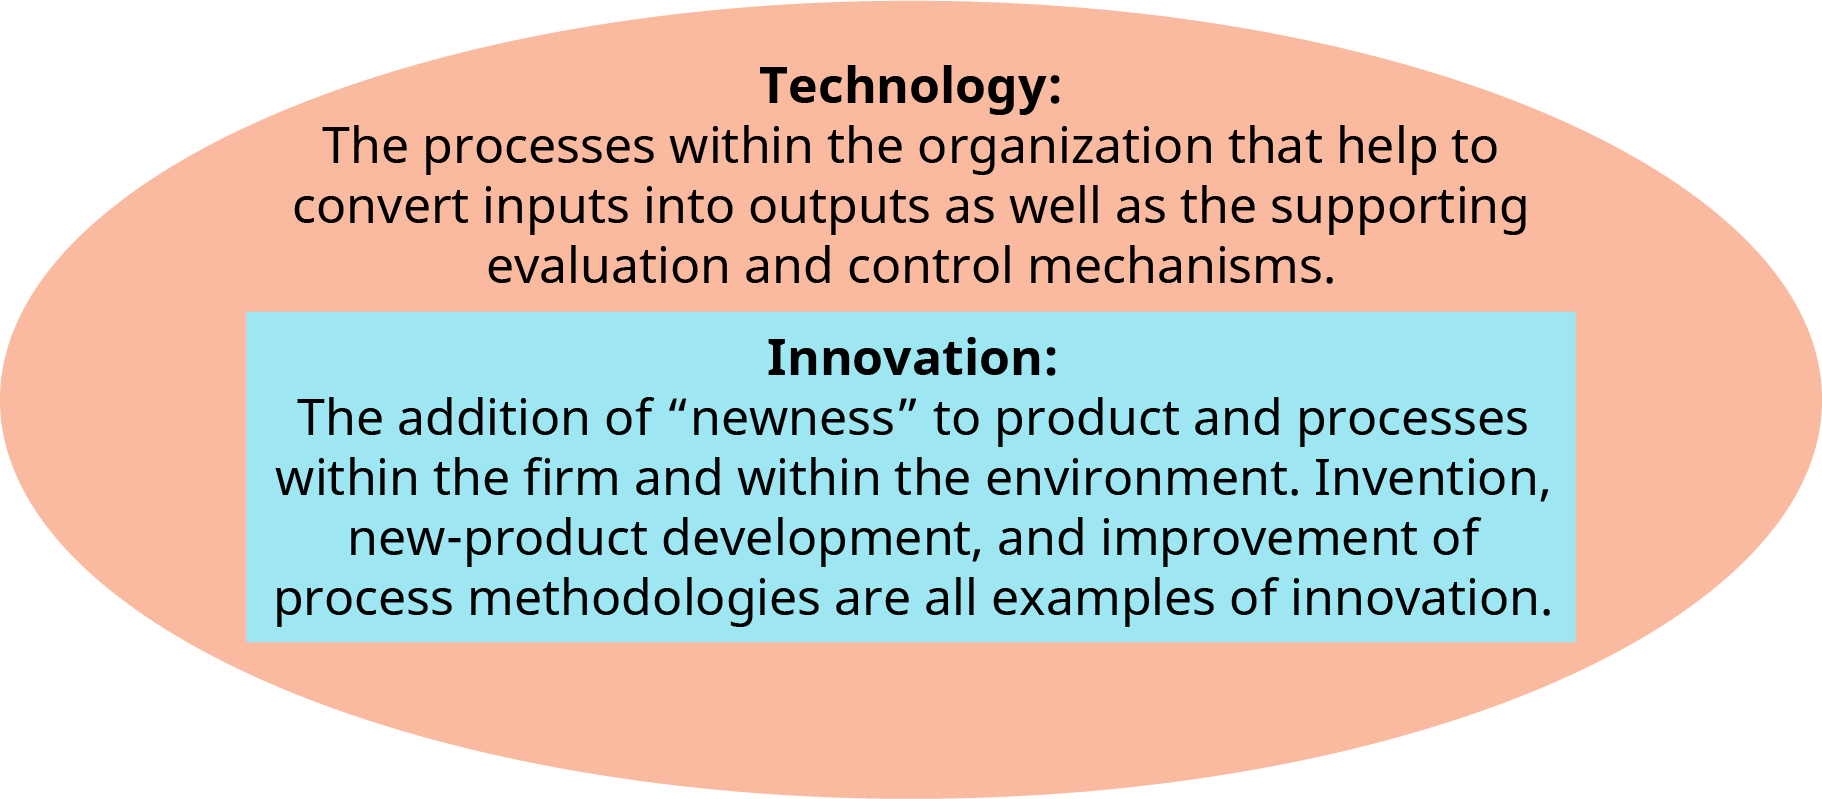 插图显示了叠加在椭圆形内的 “技术” 和 “创新” 这两个术语的定义。